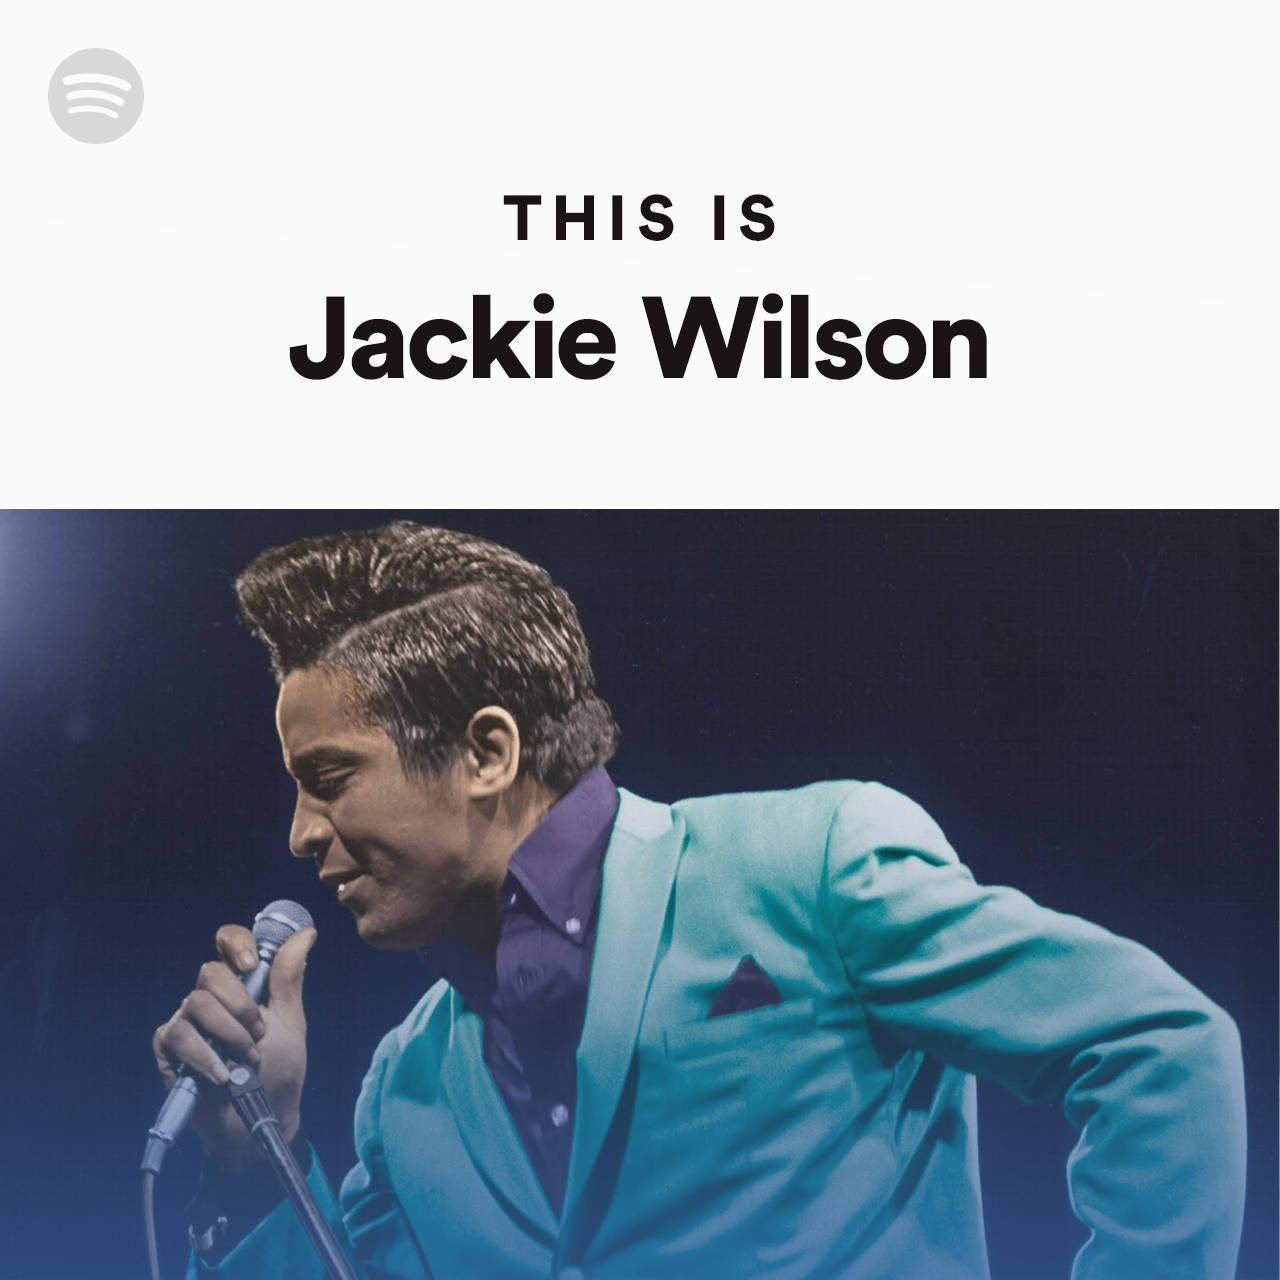 Jackiewilson Cantor Americano Capa De Lista De Reprodução Do Spotify. Papel de Parede